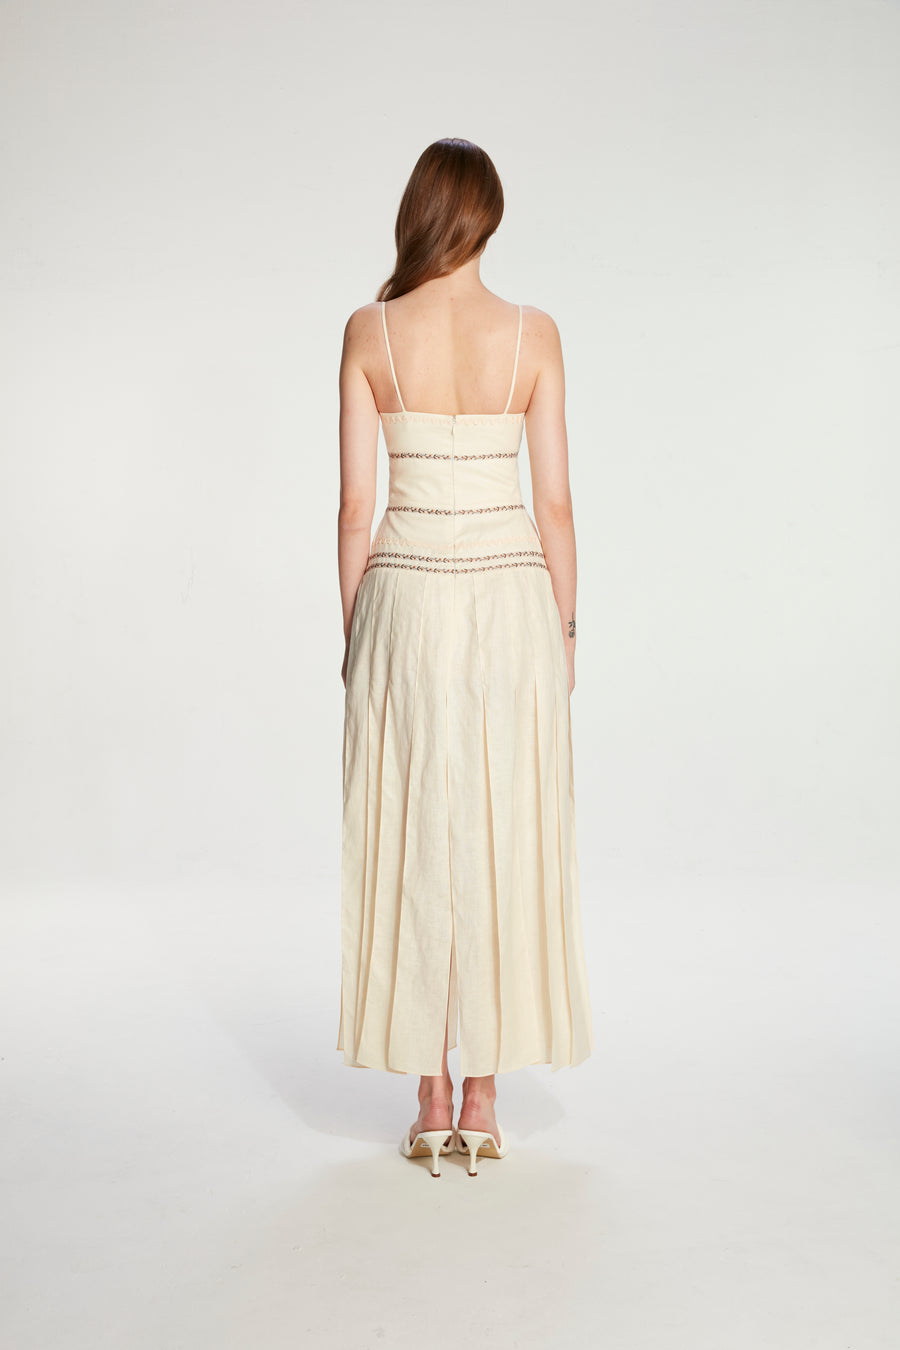 One-shoulder strapless dress